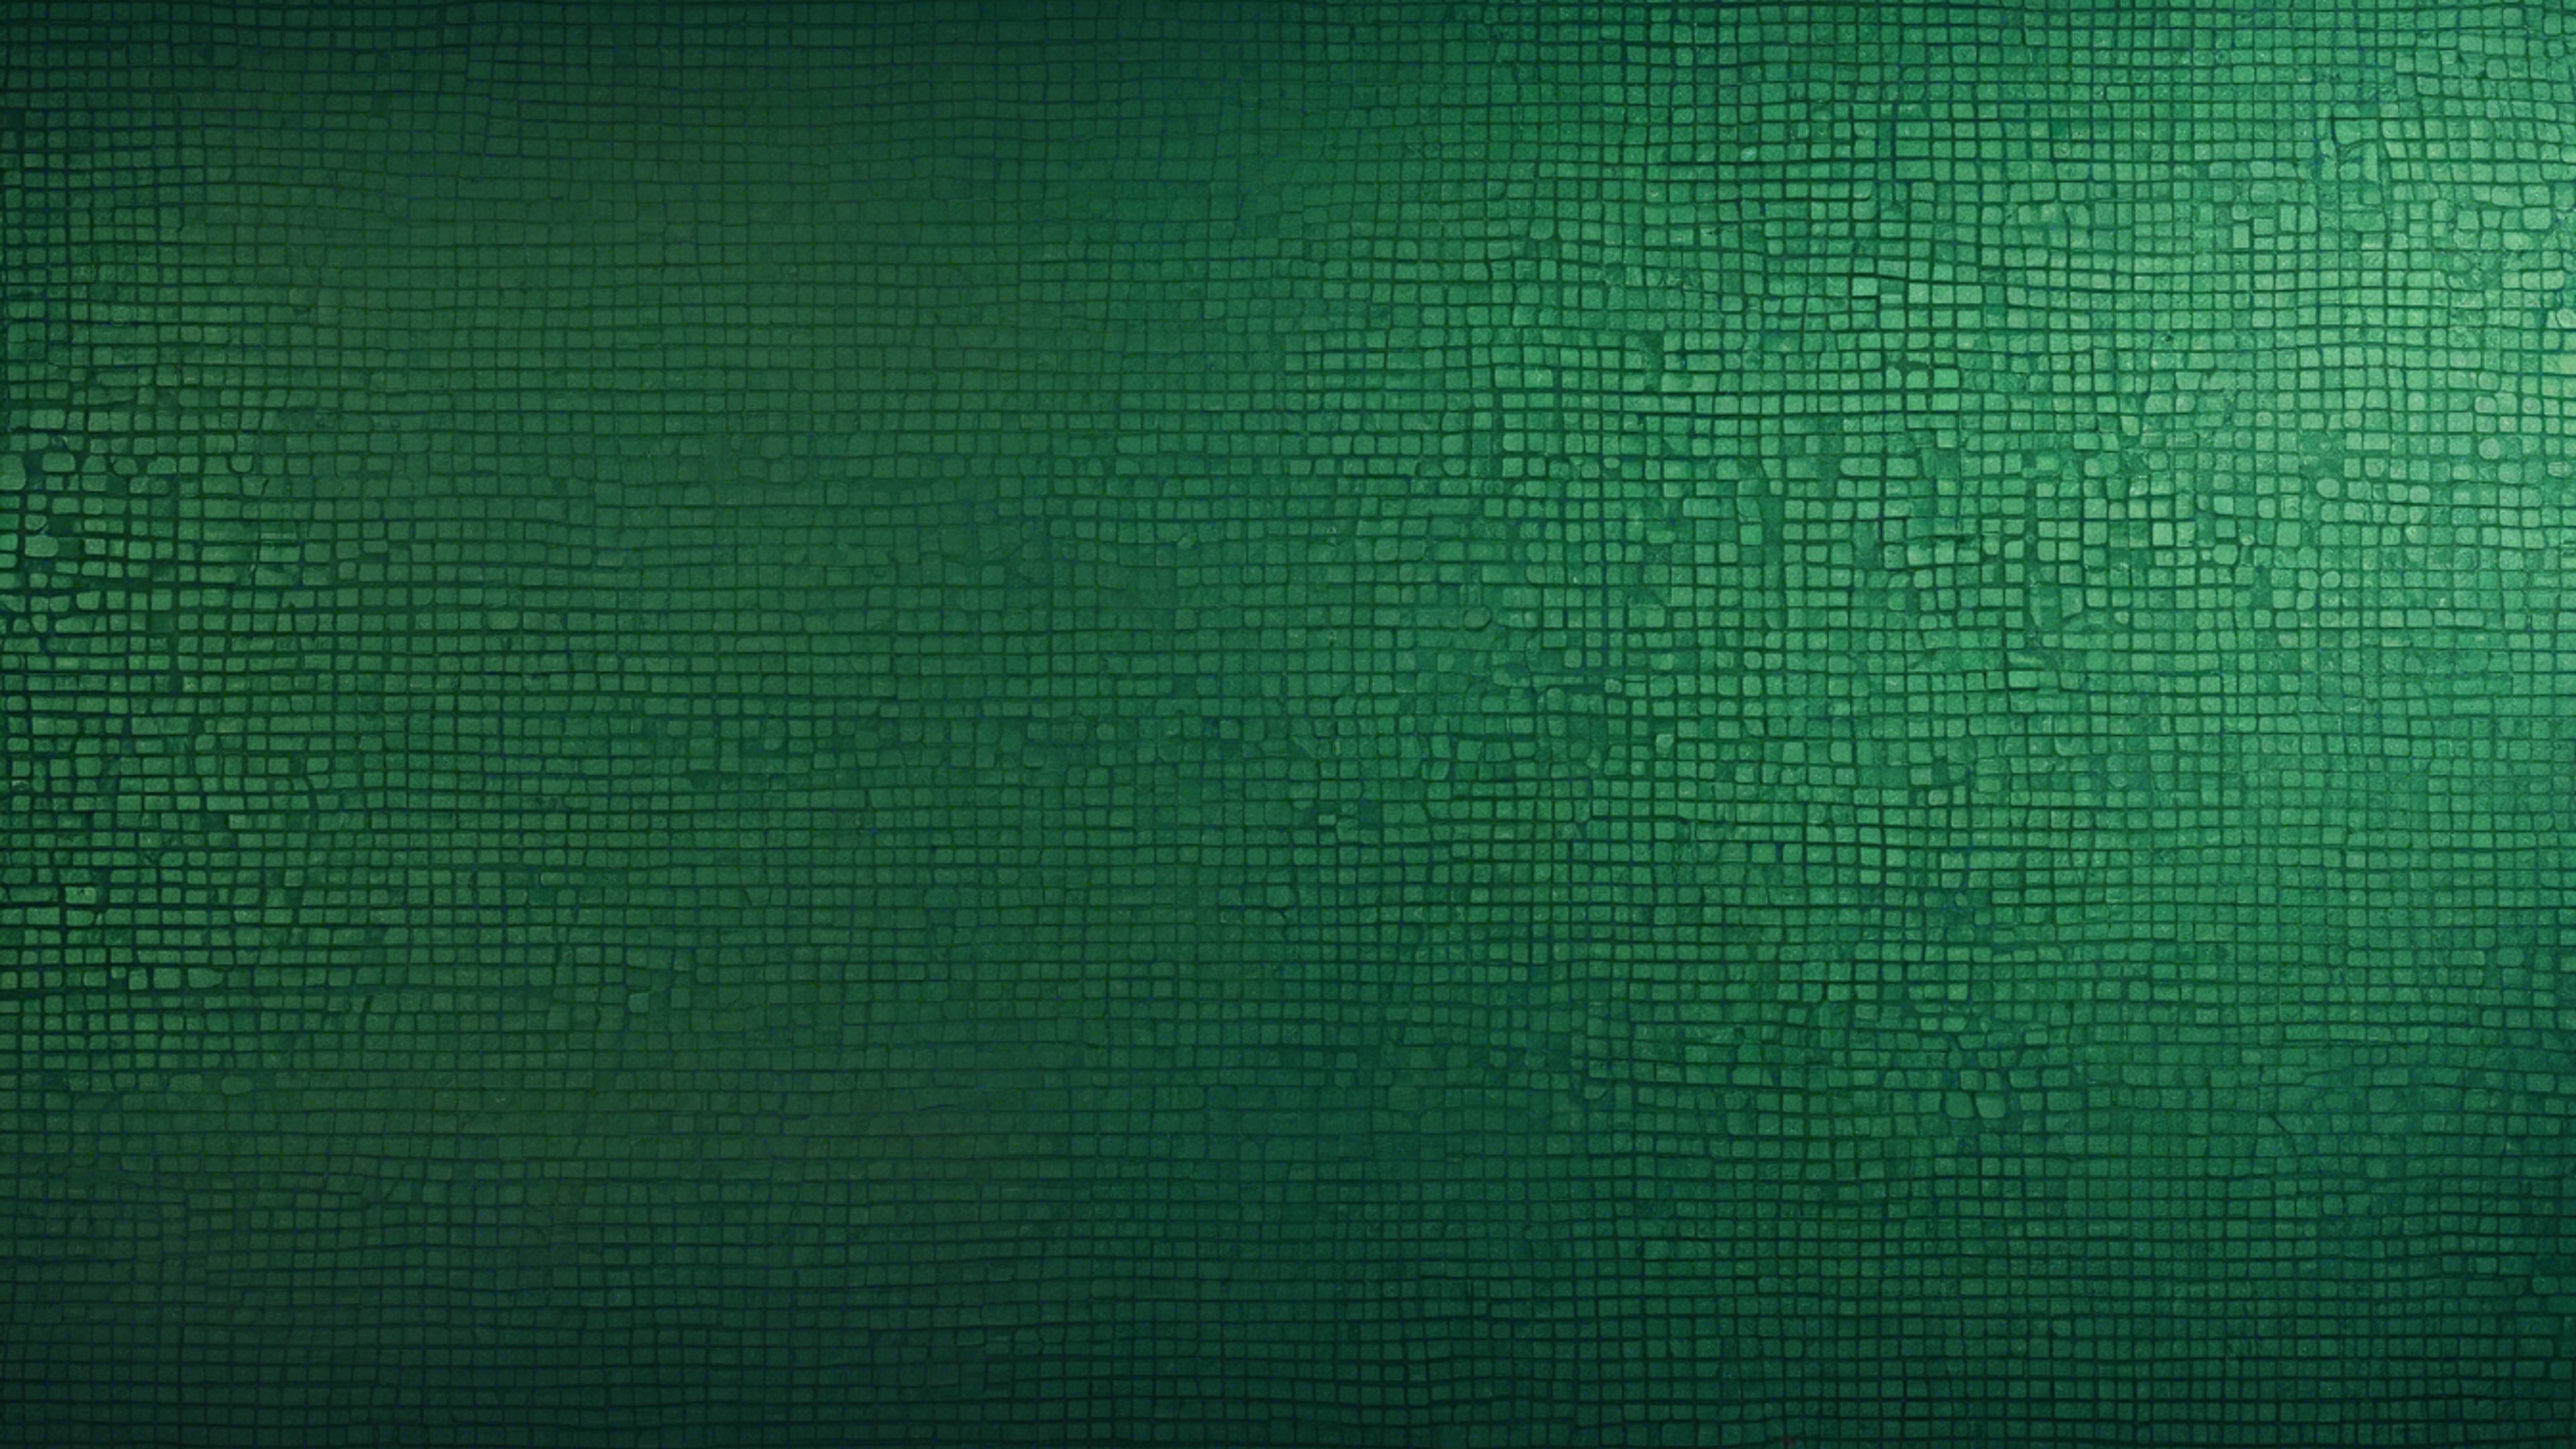 A sheet of cool, dark green, textured wallpaper.壁紙[d14e714c563d44158a7c]